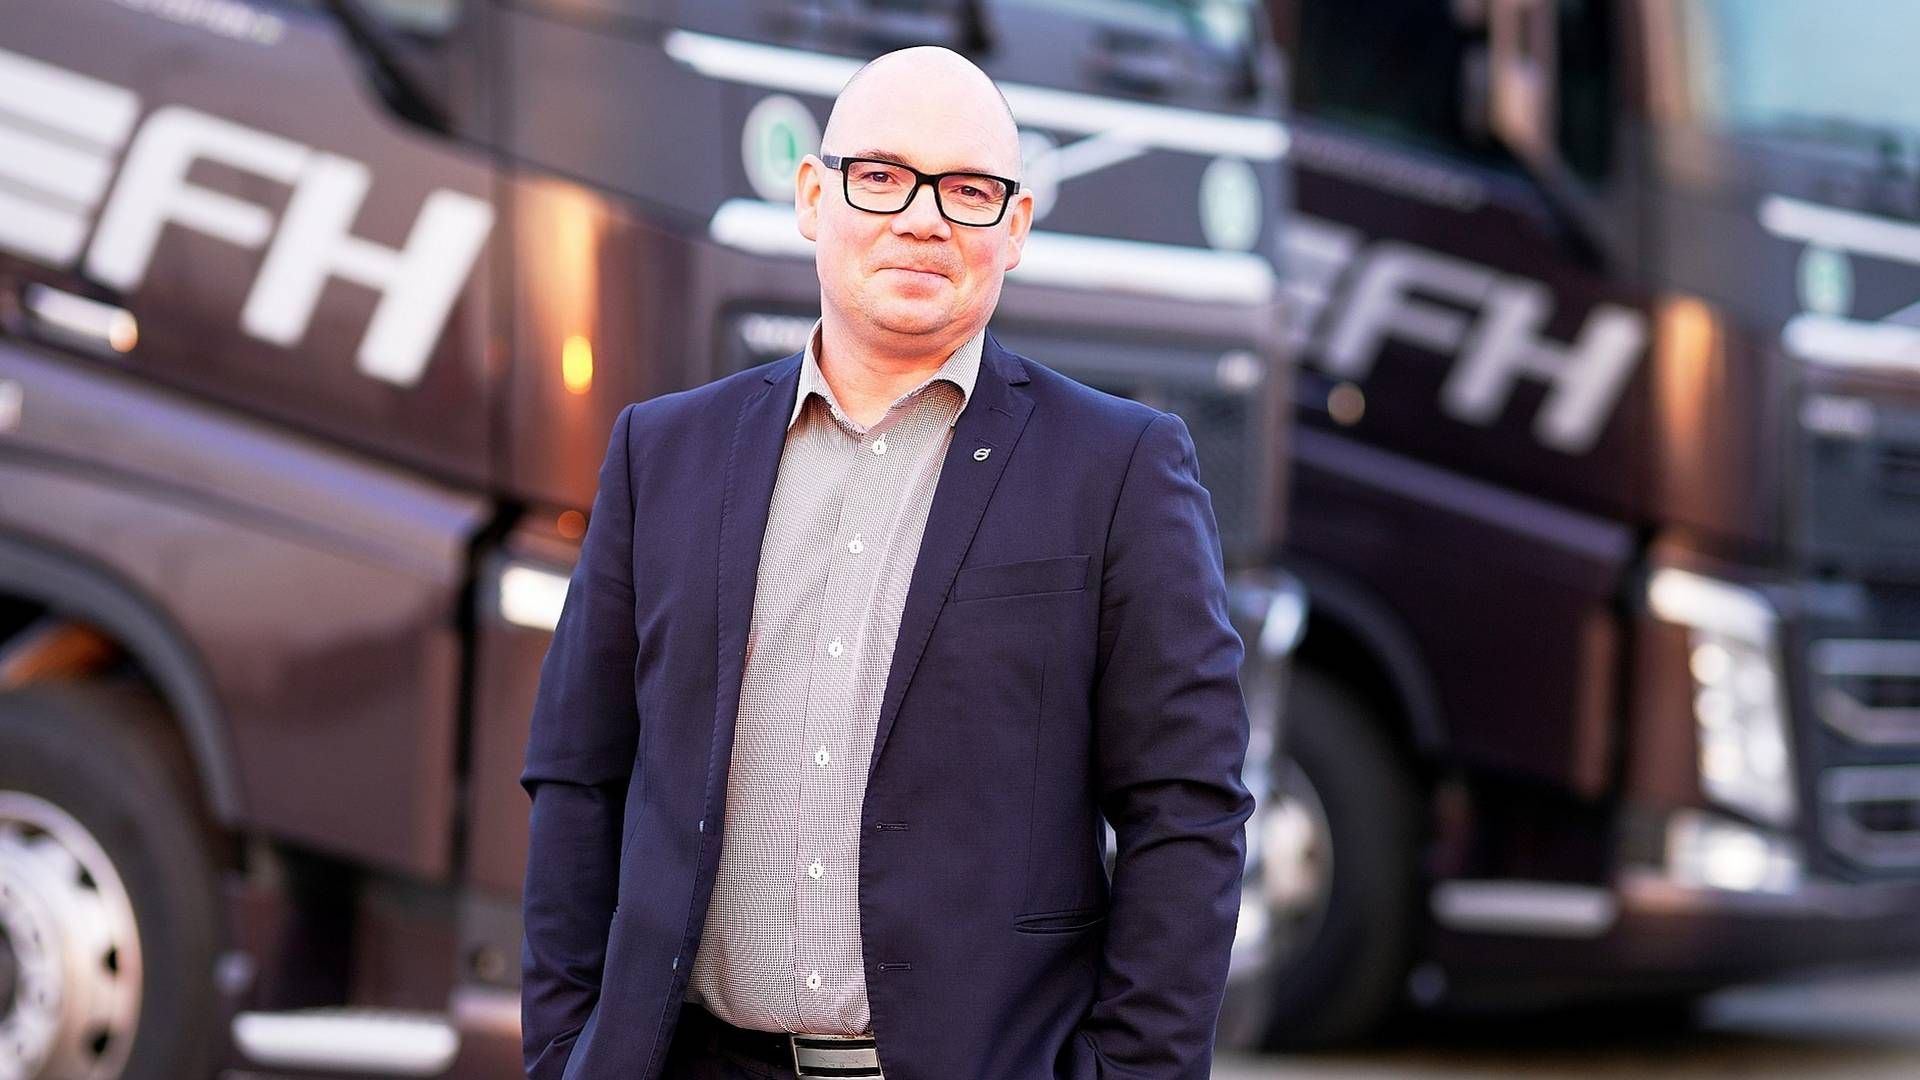 Peter Ericson indtog posten som adm. direktør i Volvo Danmark i august 2020 efter at have haft en tilsvarende stilling for selskabet i Rumænien. Han blev overrasket over, at der ikke er større fokus på den grønne omstilling i Danmark. | Foto: PR/Volvo Danmark